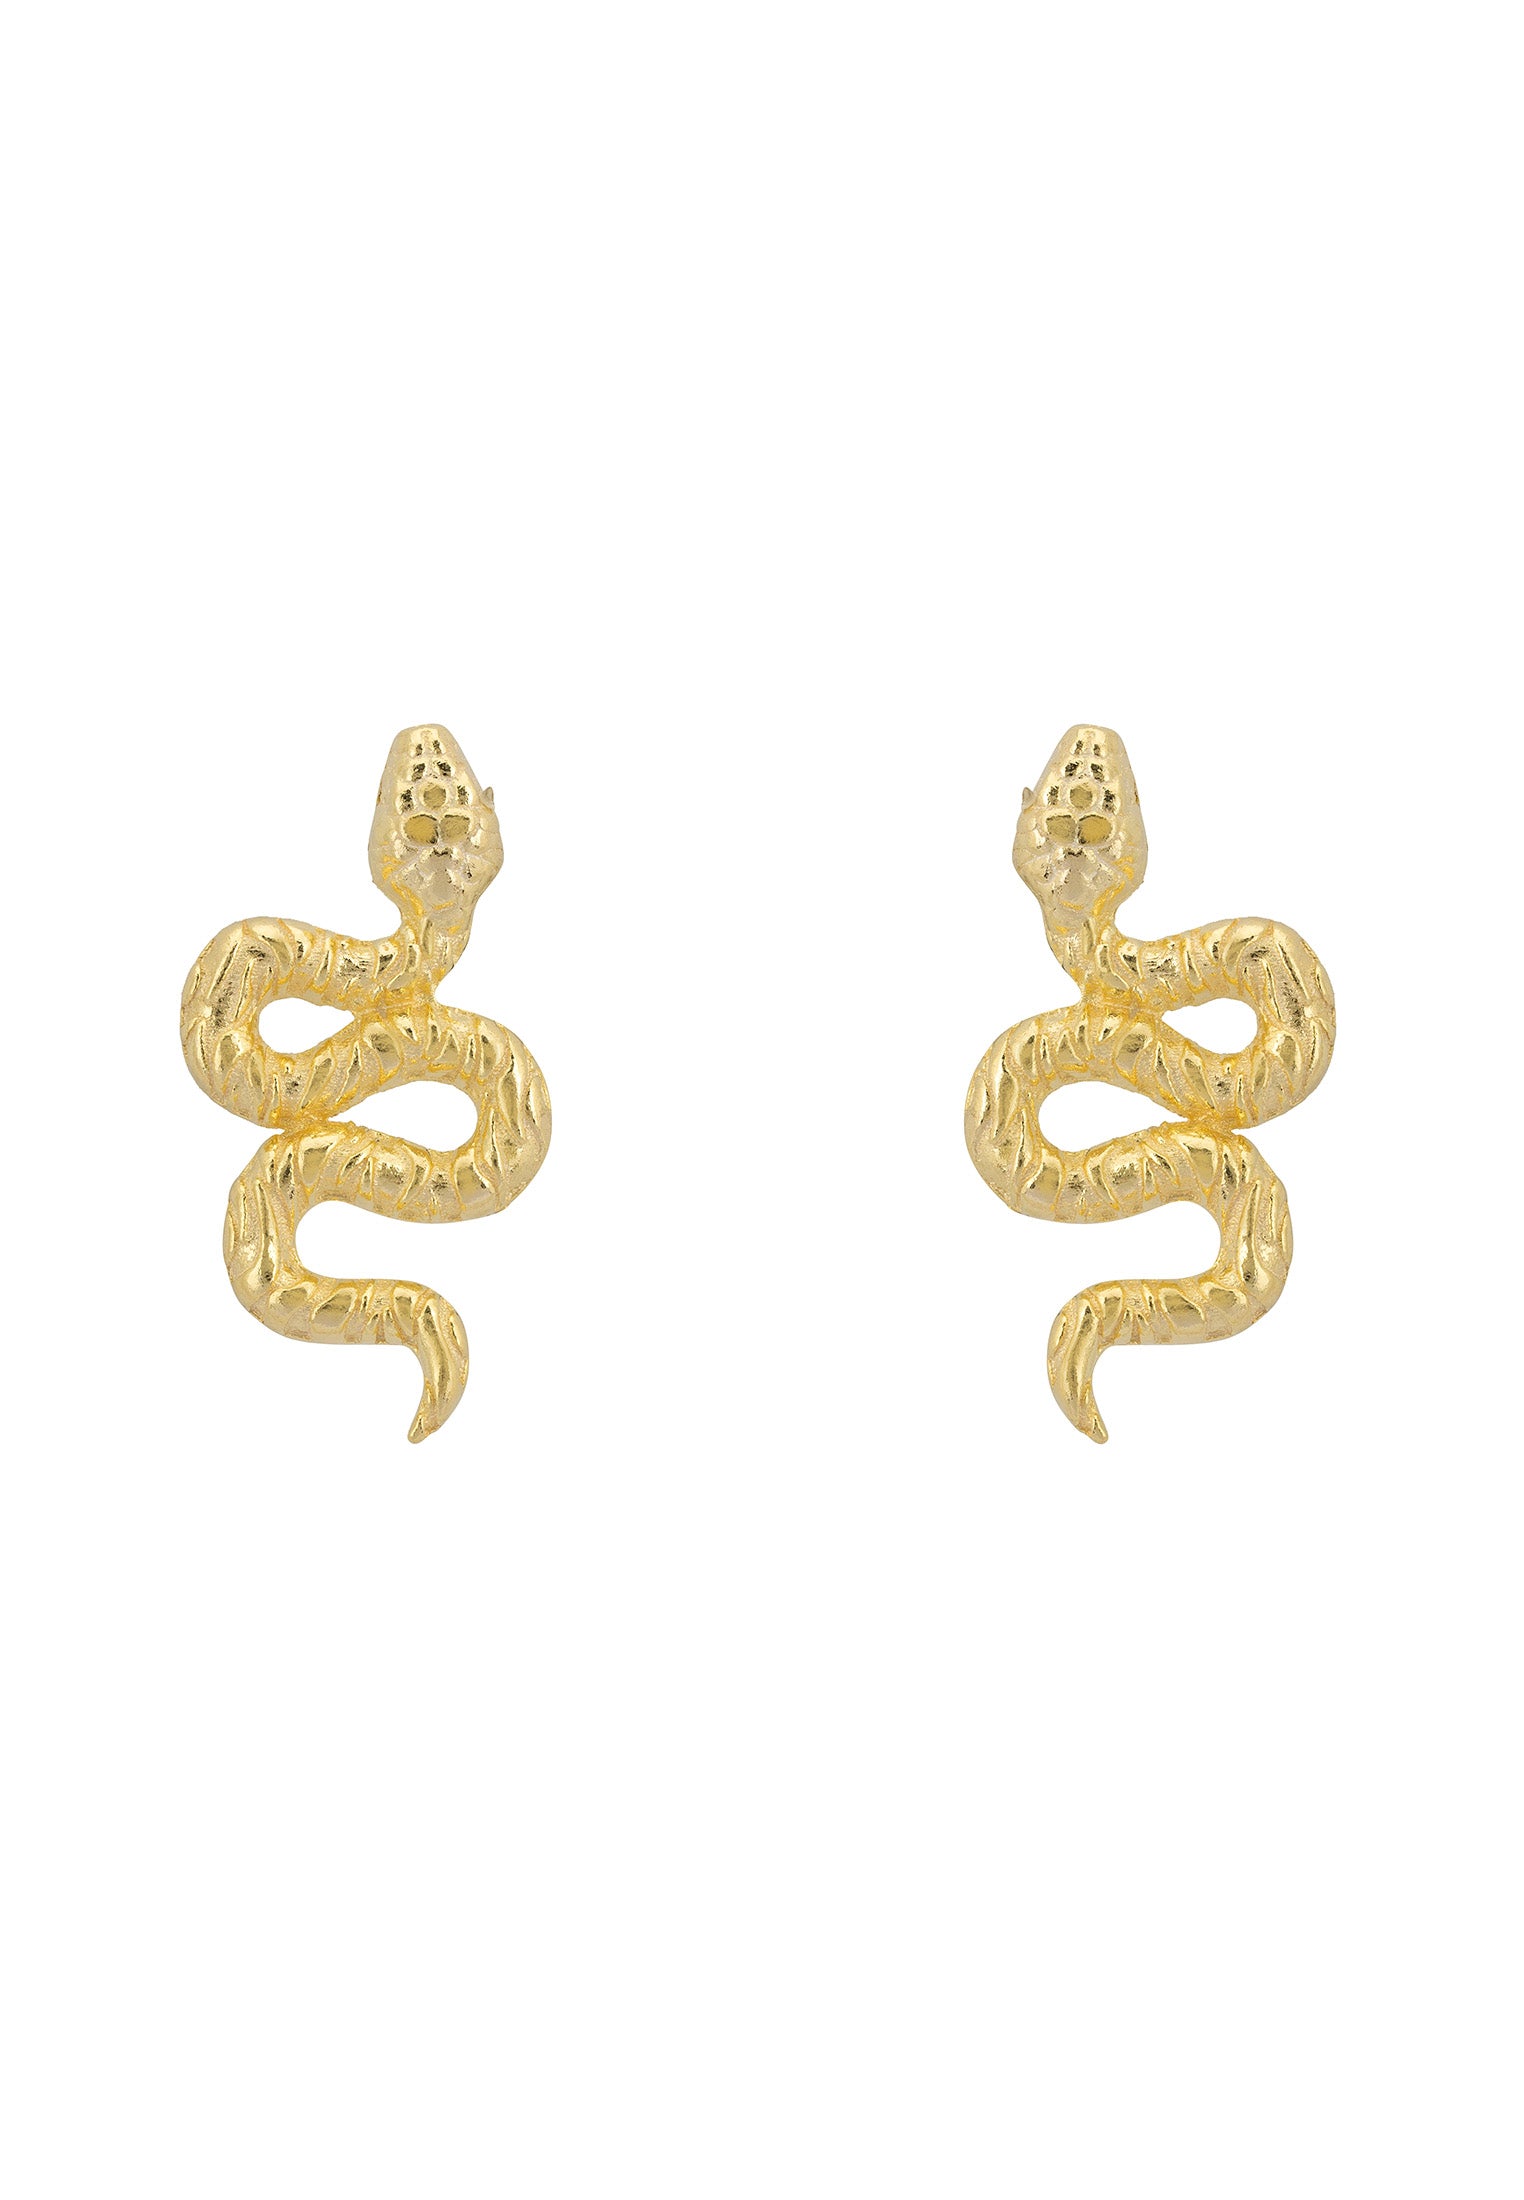 Pendientes con forma de serpiente cobra en espiral en oro